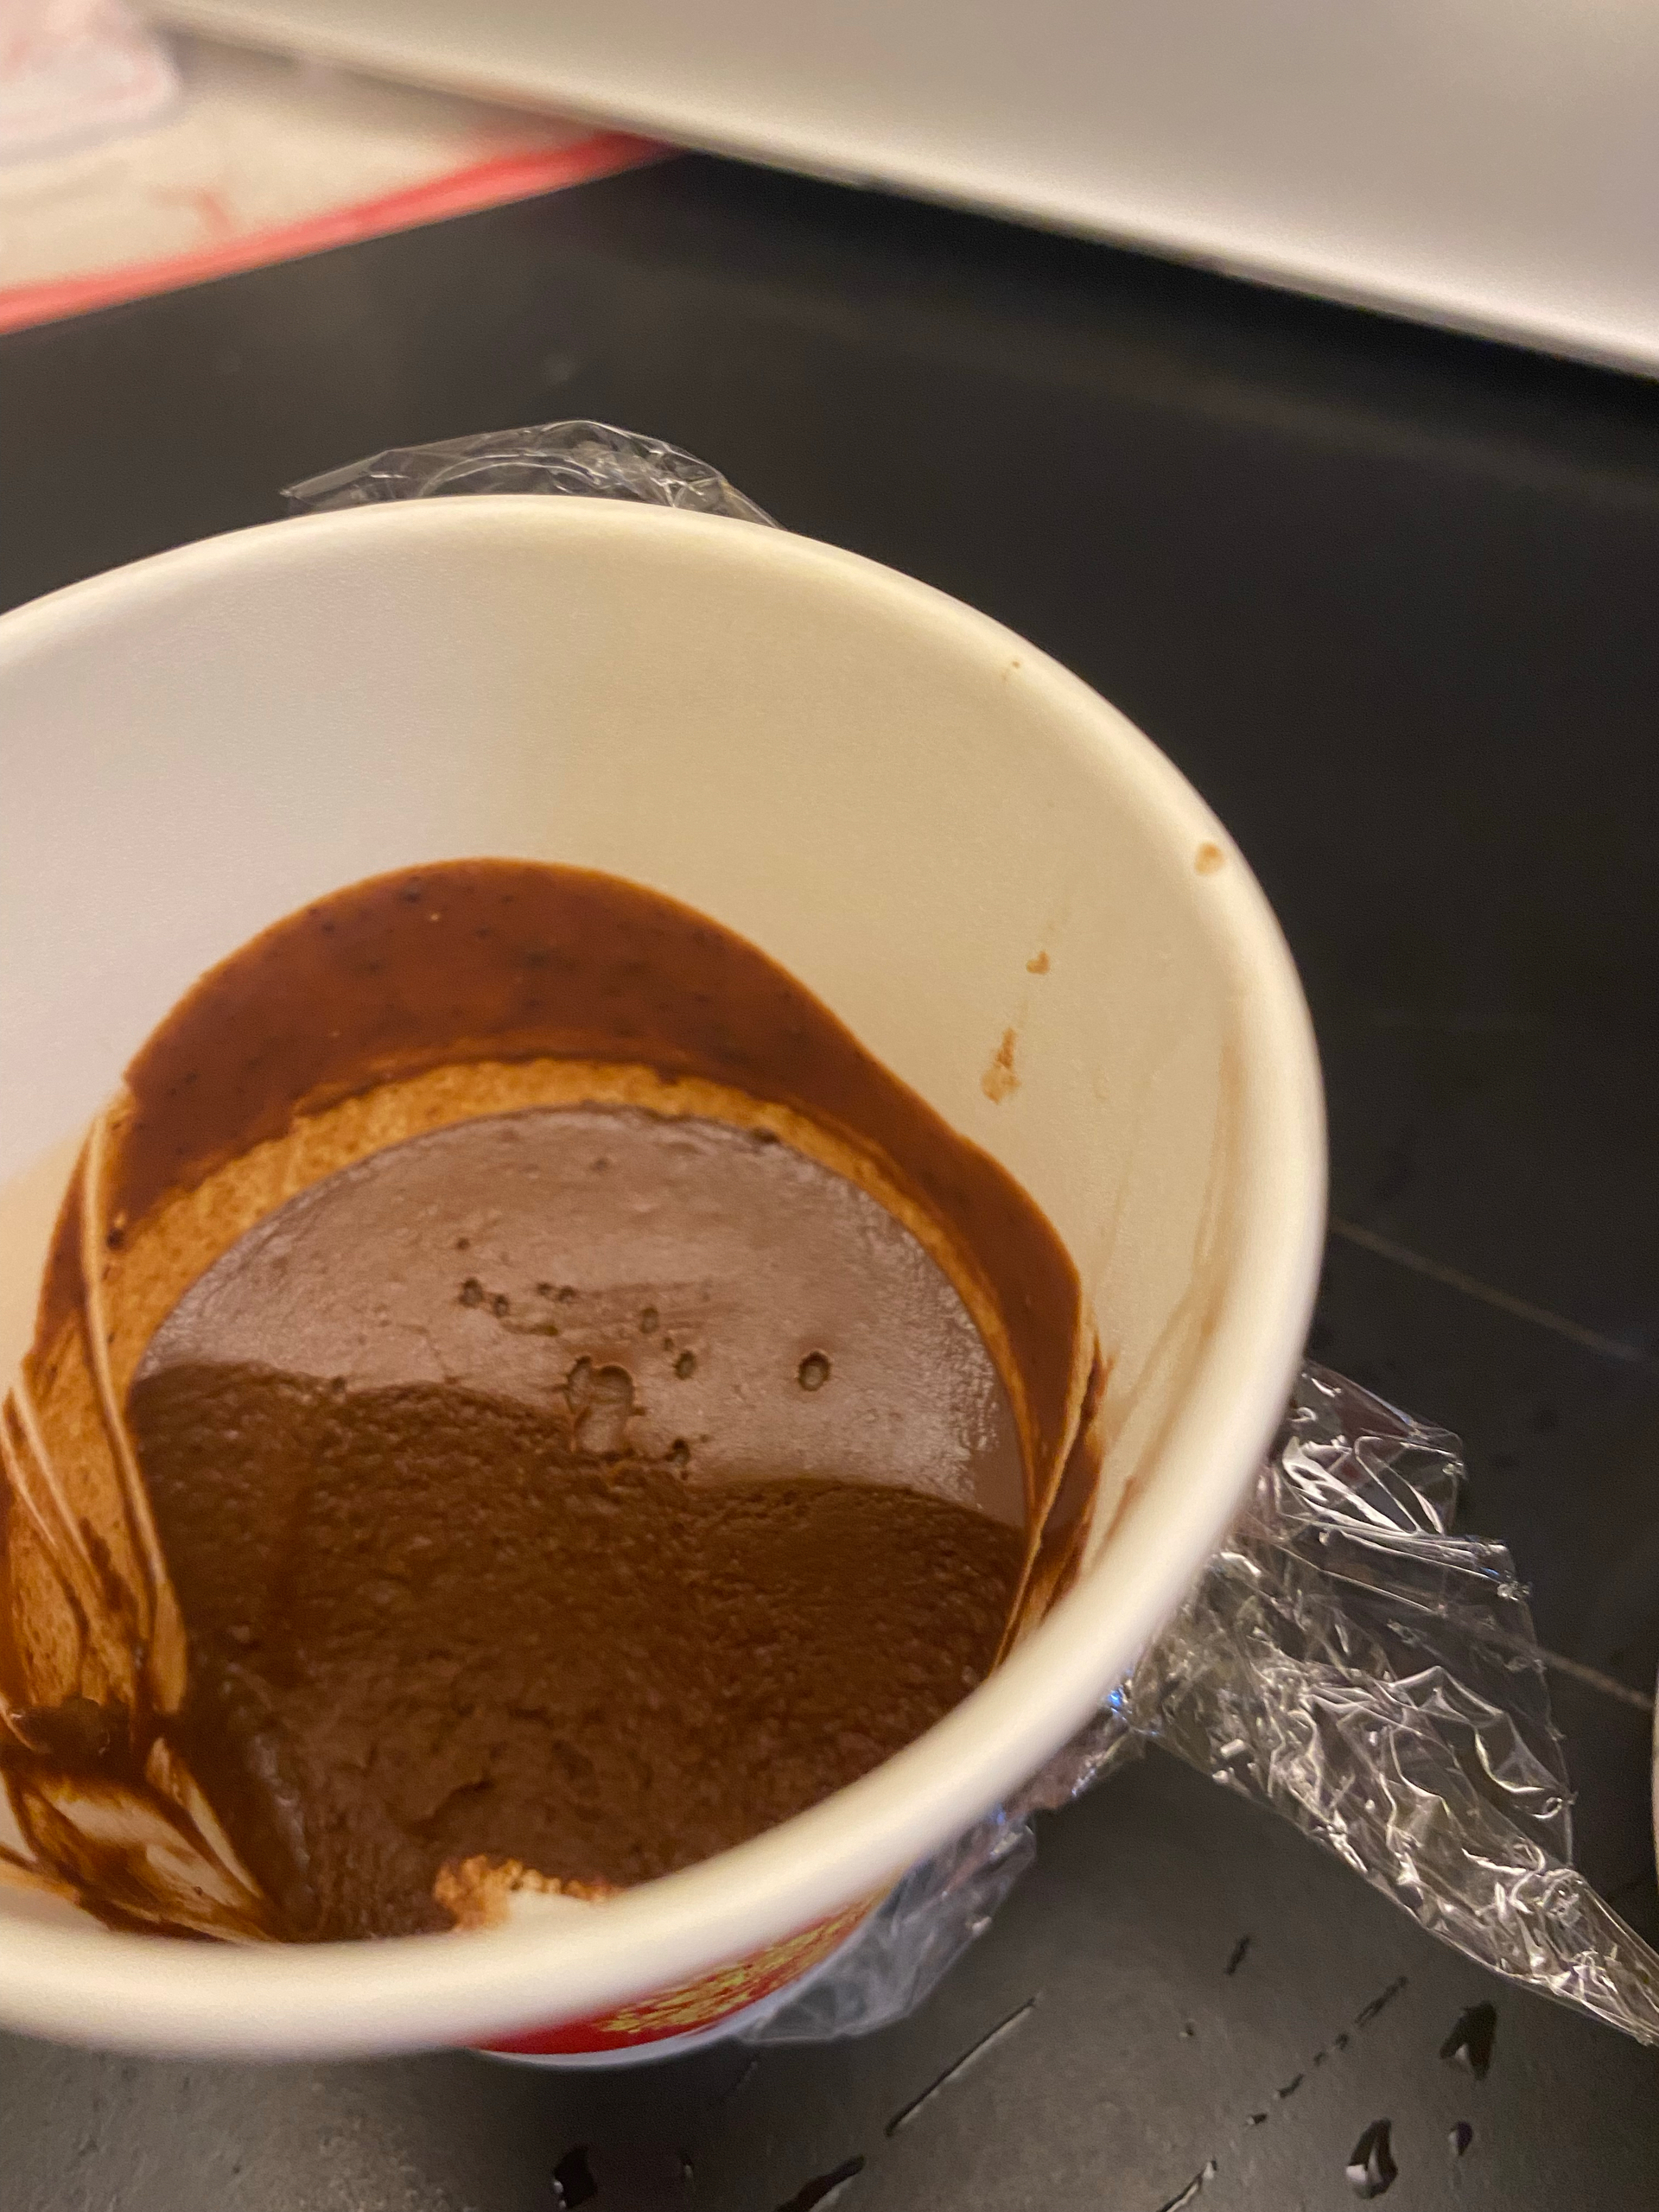 简易不减味-低热量超简单熔岩巧克力